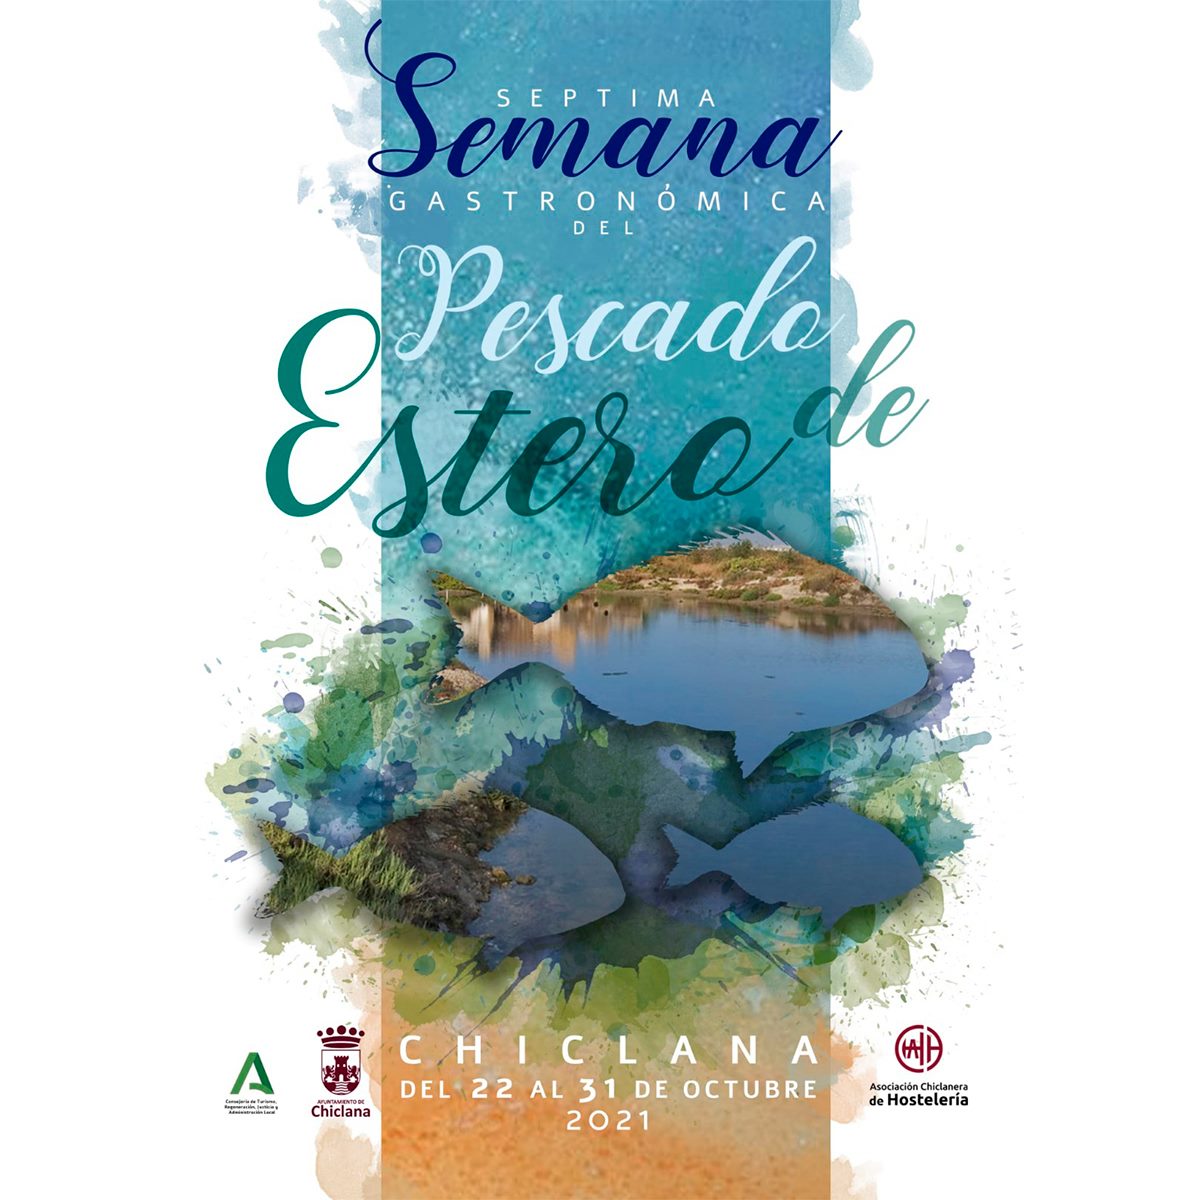 VII Semana Gastronómica del Pescado de Estero de Chiclana 2021